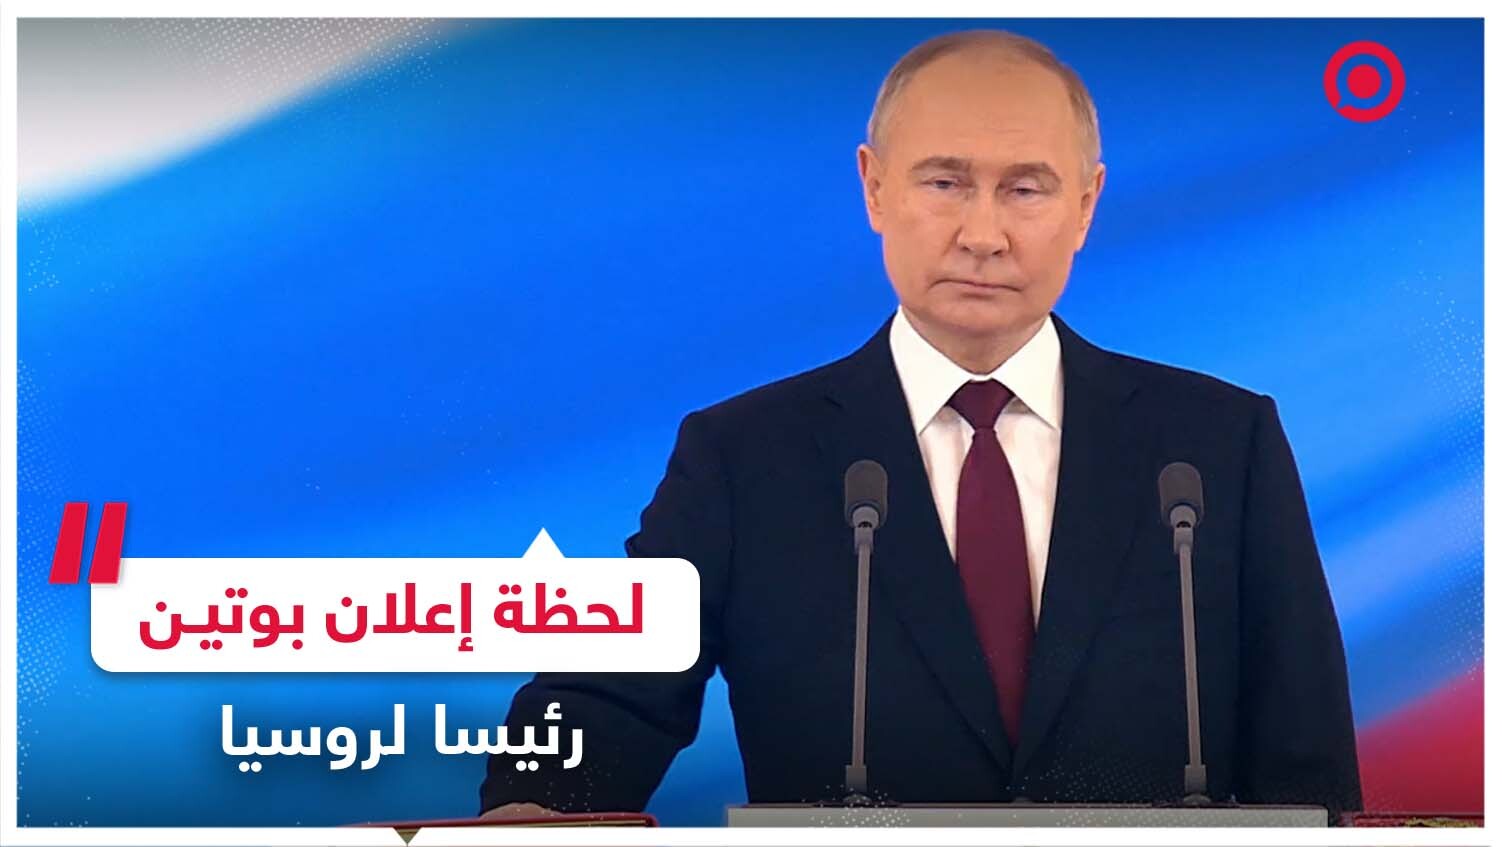 لحظة إعلان فلاديمير بوتين رئيسا للاتحاد الروسي لولاية دستورية جديدة